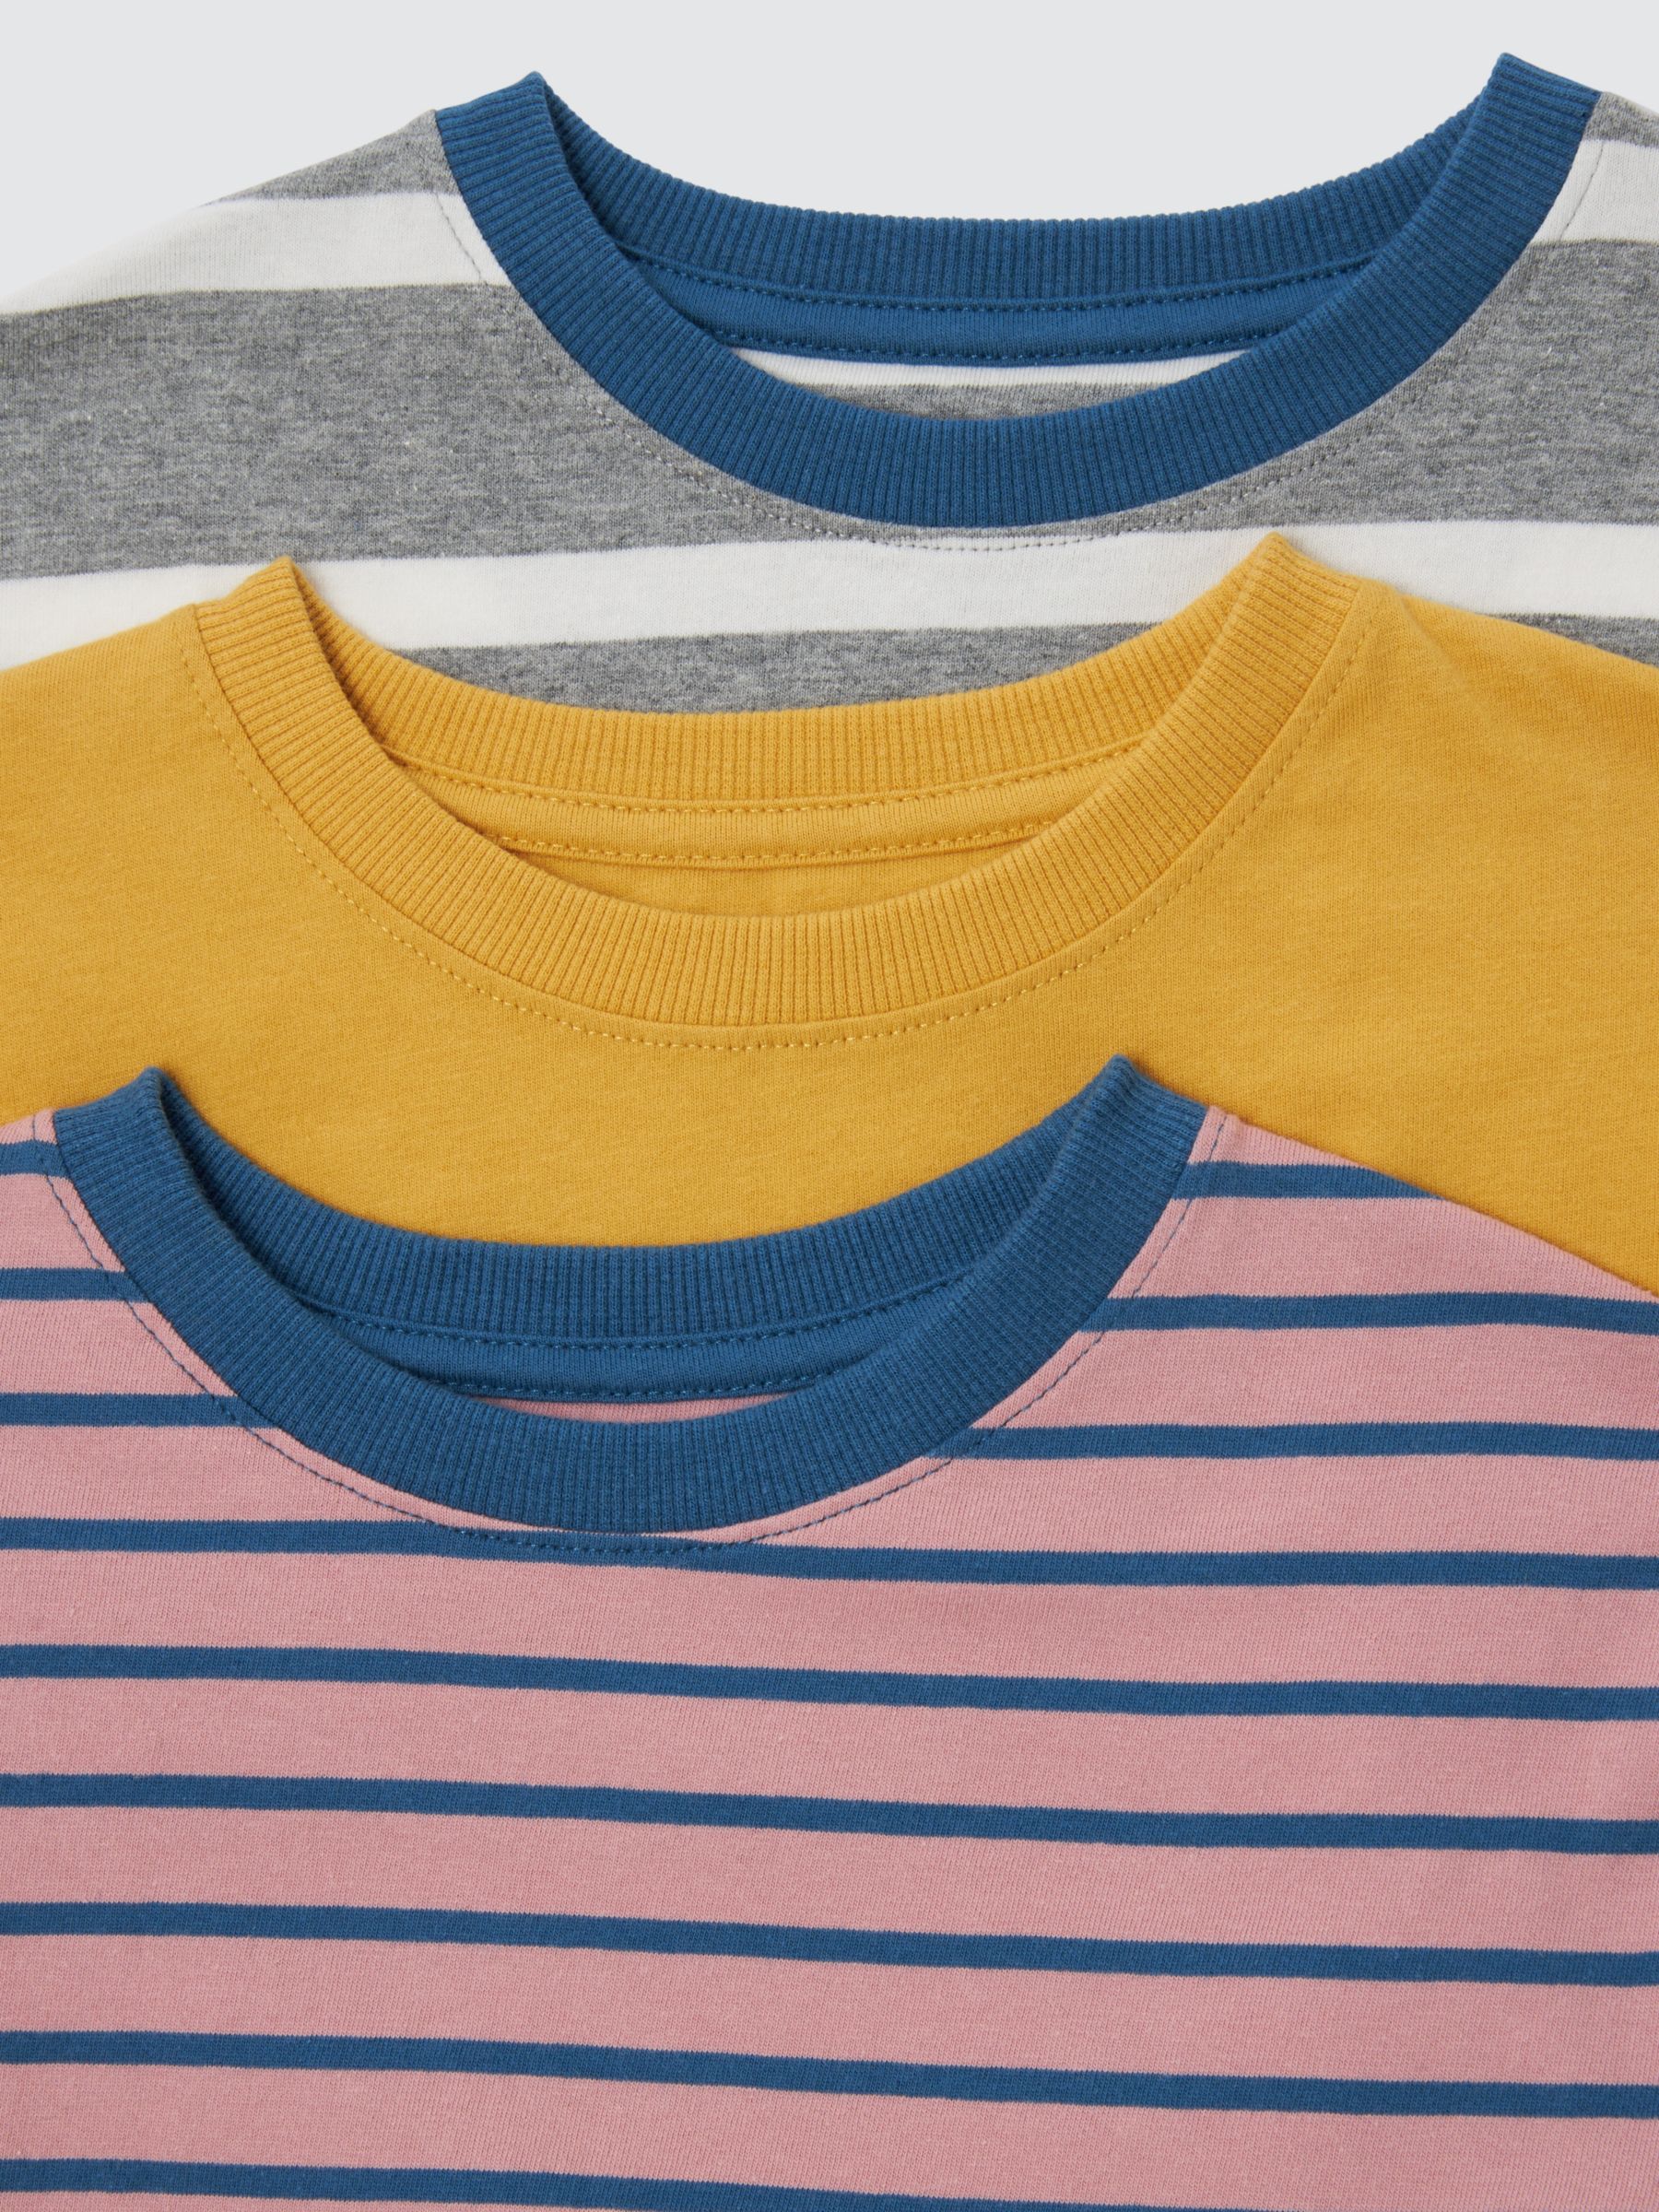 John Lewis Kids' Plain/Stripe T-Shirts, Pack of 3, Multi, 7 years